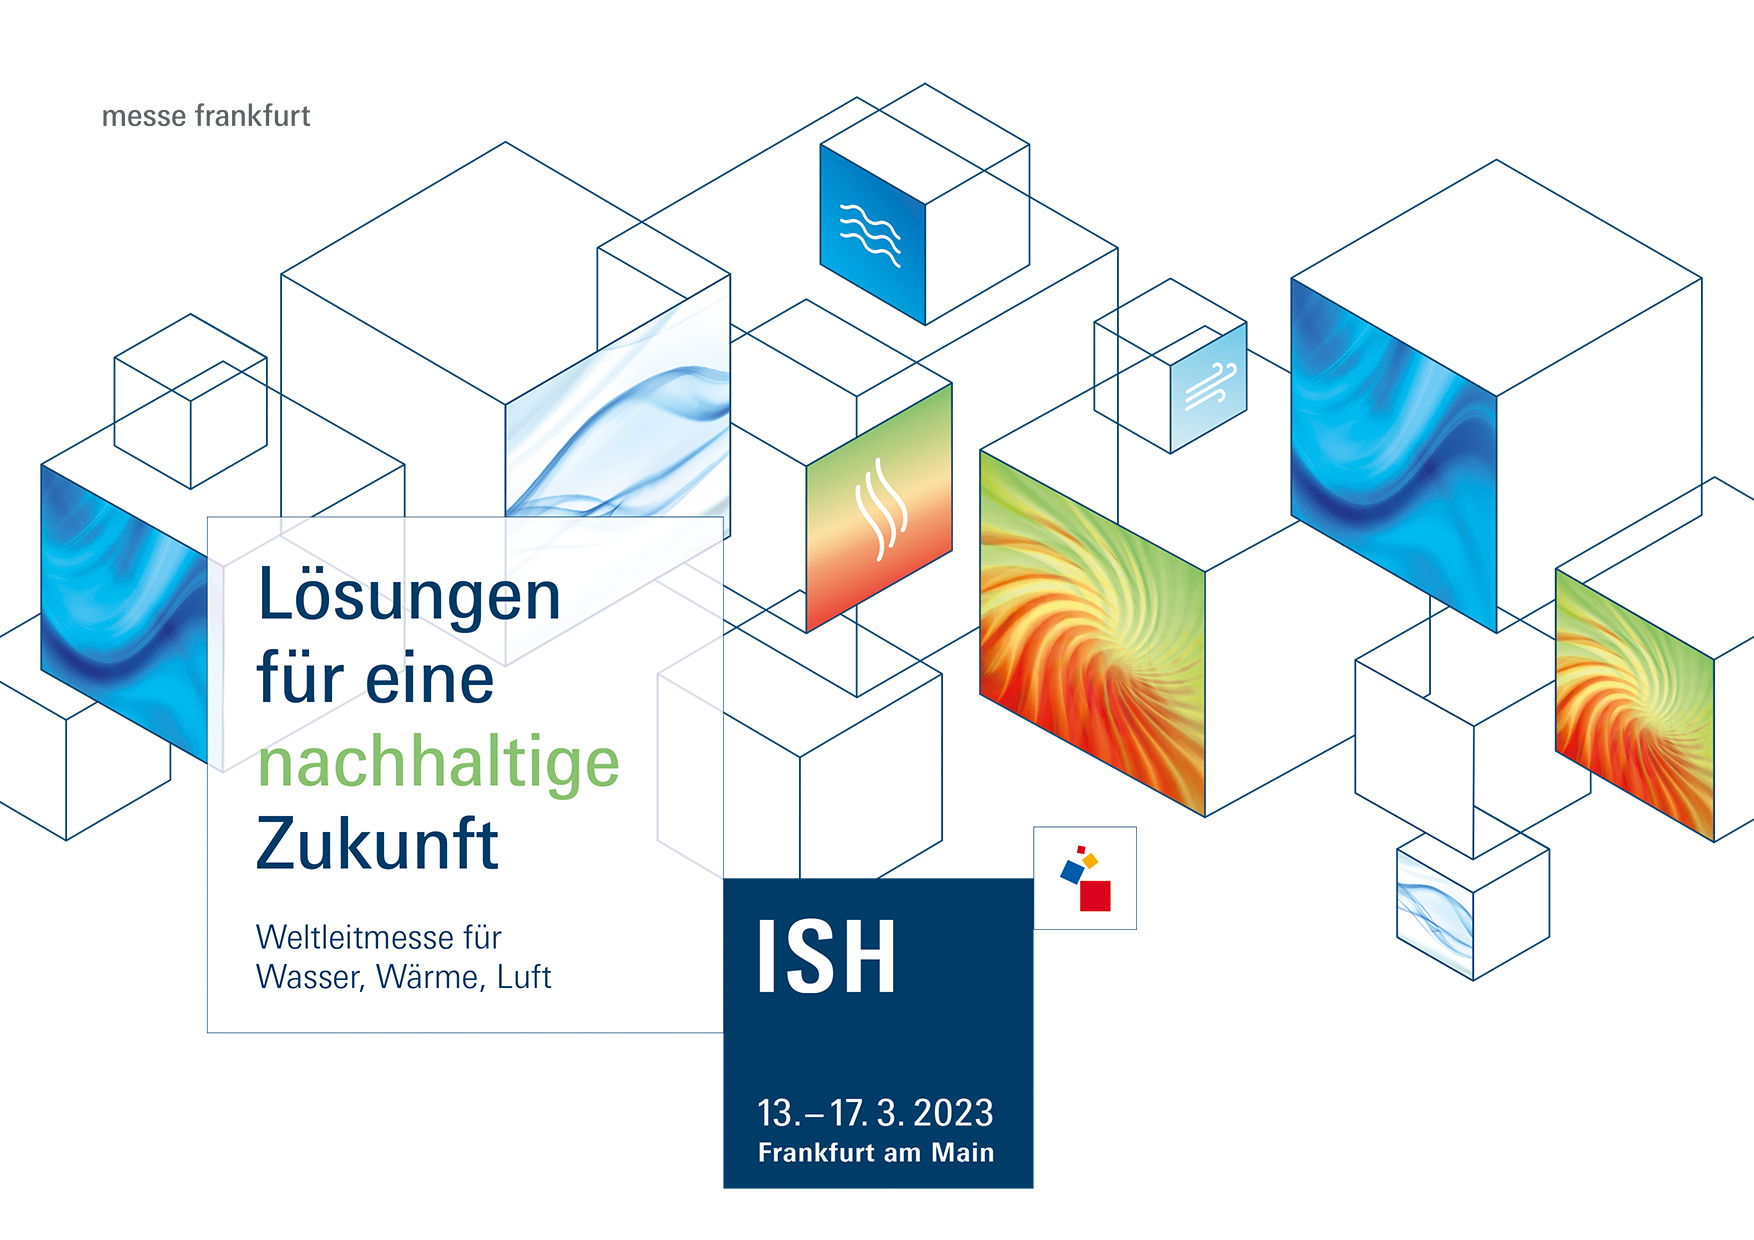 Wir sind dabei – Willkommen zur ISH vom 13. bis 17. März 2023 in Frankfurt am Main